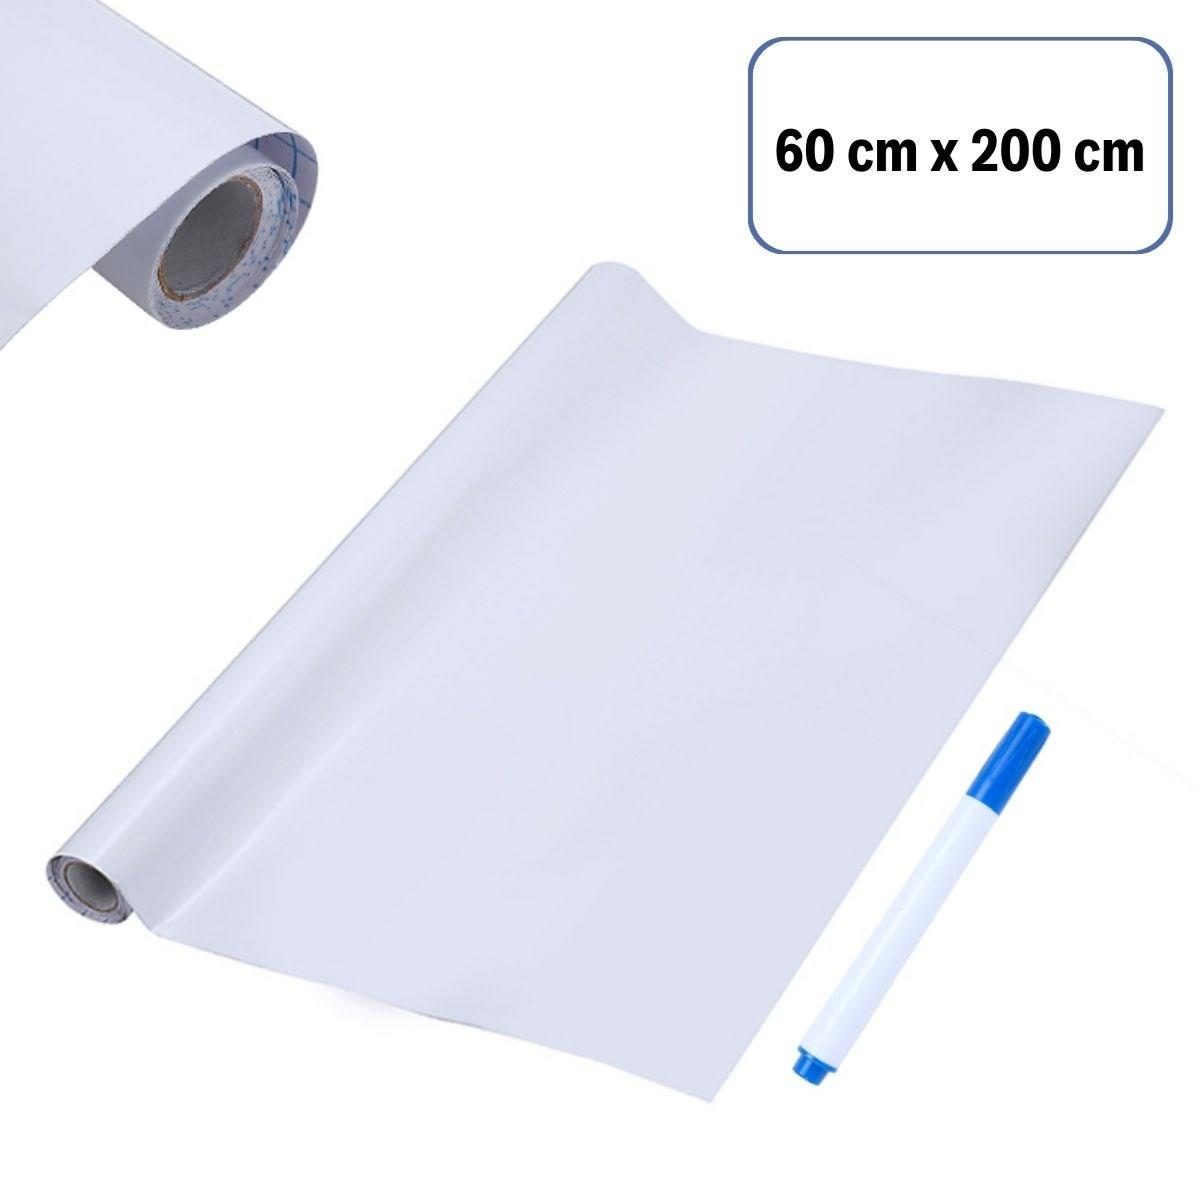 CLZ192 Silinebilir Kalemli Sticker  Duvara Yapışabilen Yazı Tahtası 60x200 cm (4172)